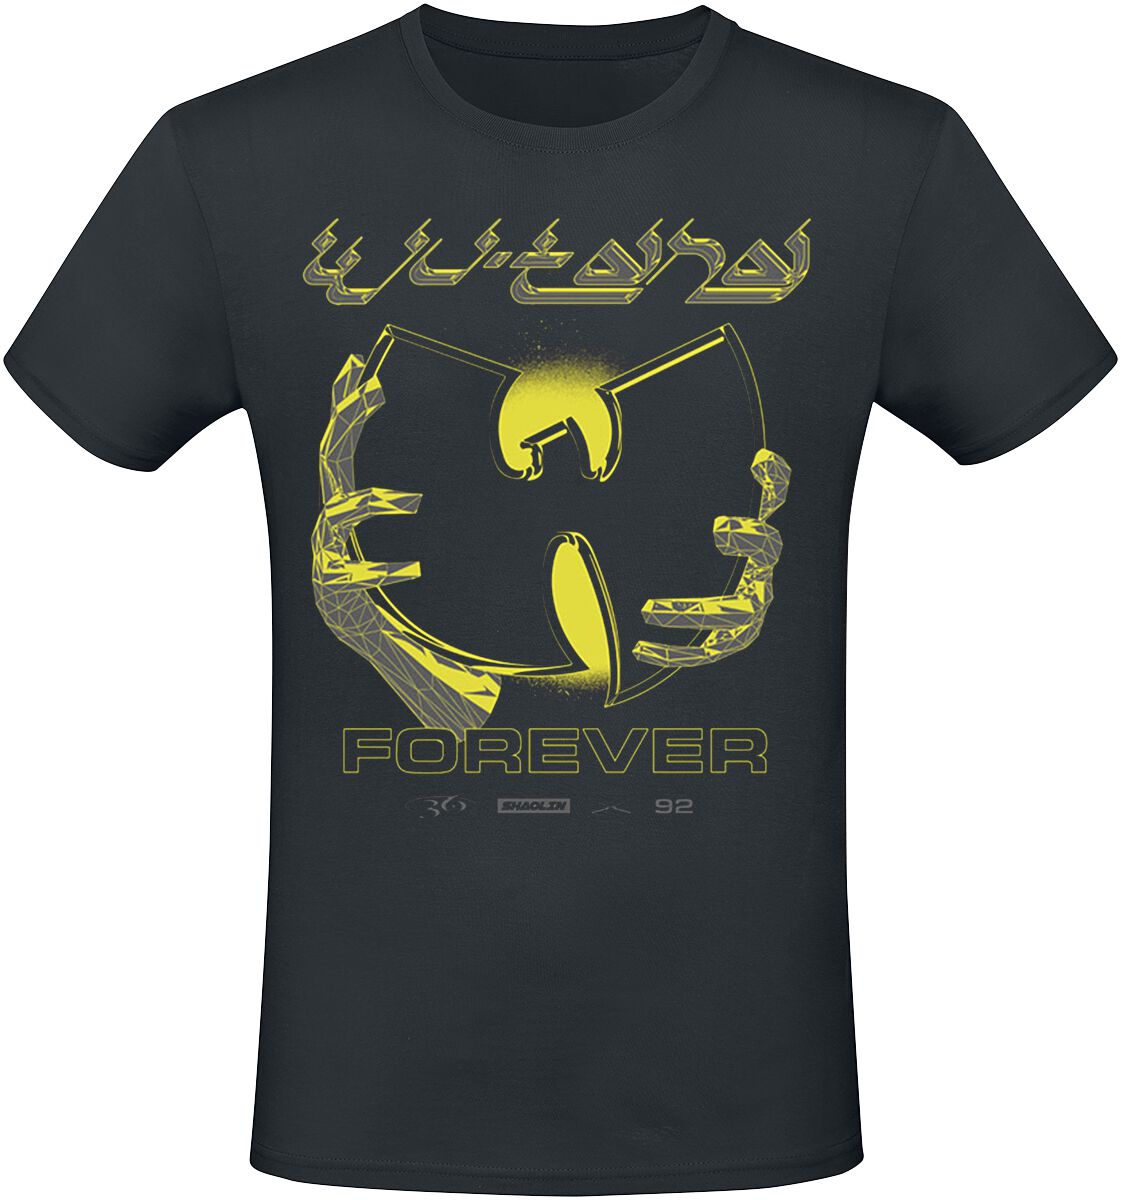 Wu-Tang Clan T-Shirt - Forever Chrome - S bis M - für Männer - Größe M - schwarz  - Lizenziertes Merchandise!